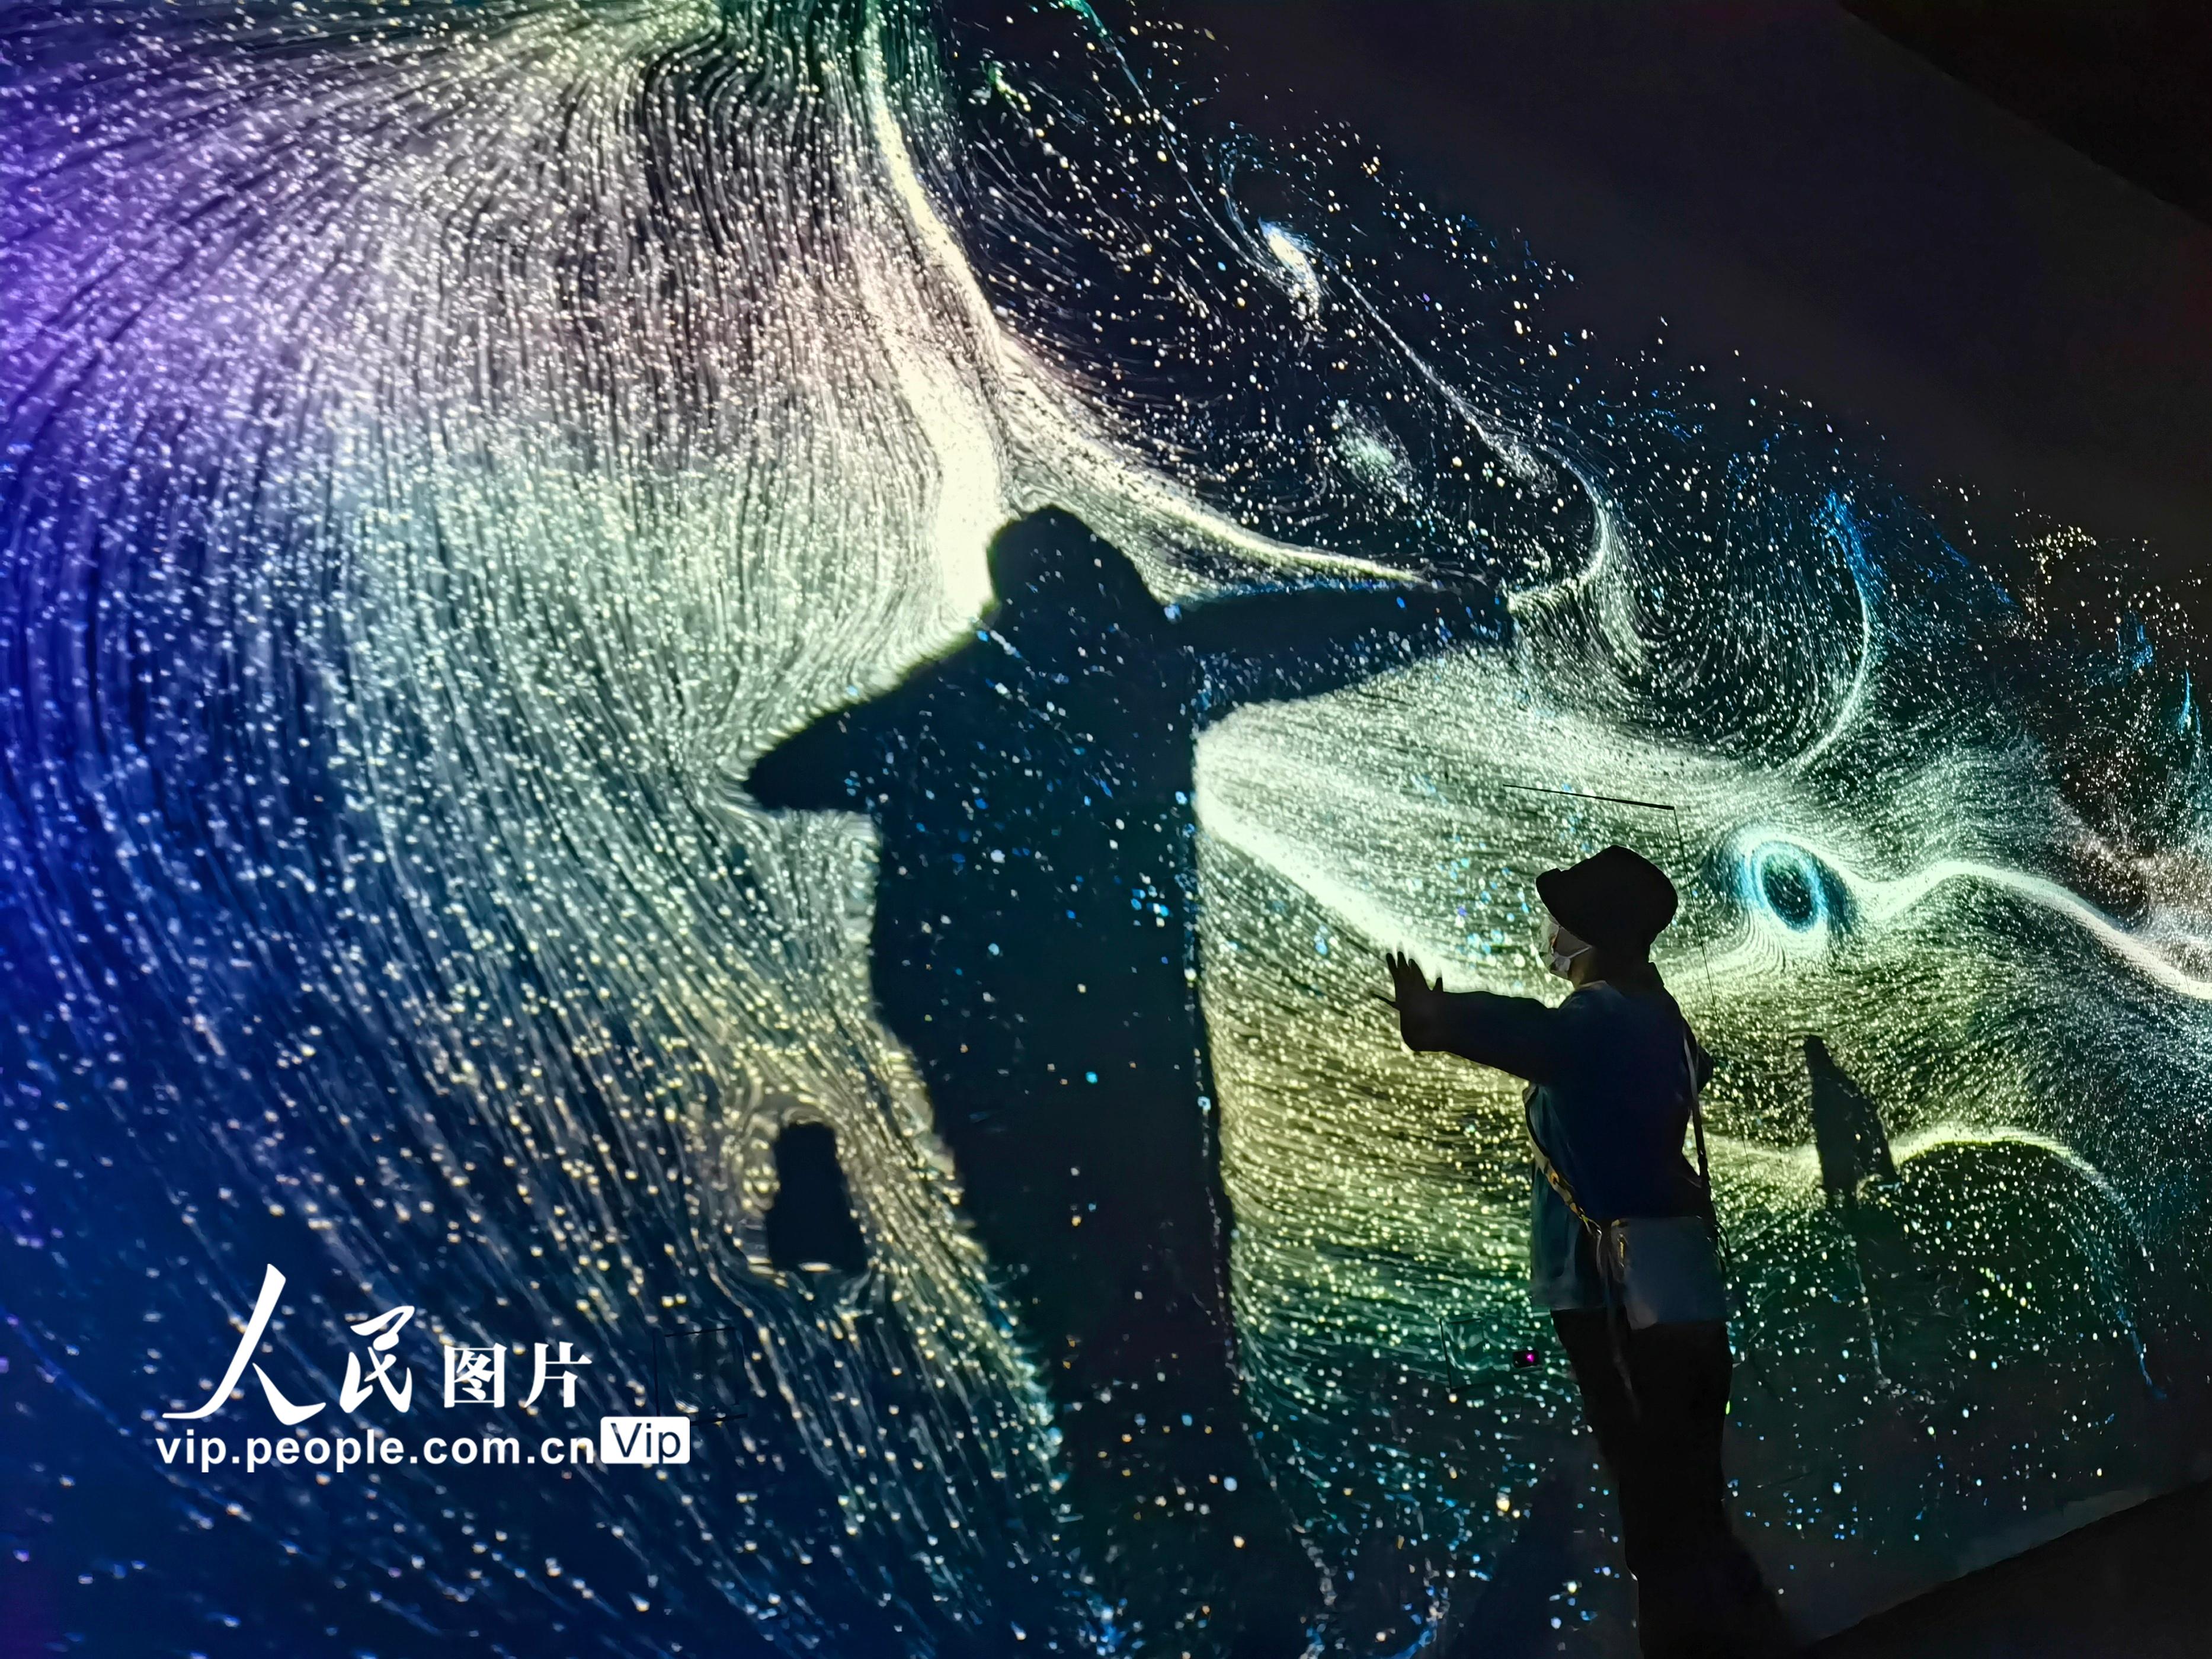 在上海天文館探索浩瀚宇宙無窮魅力